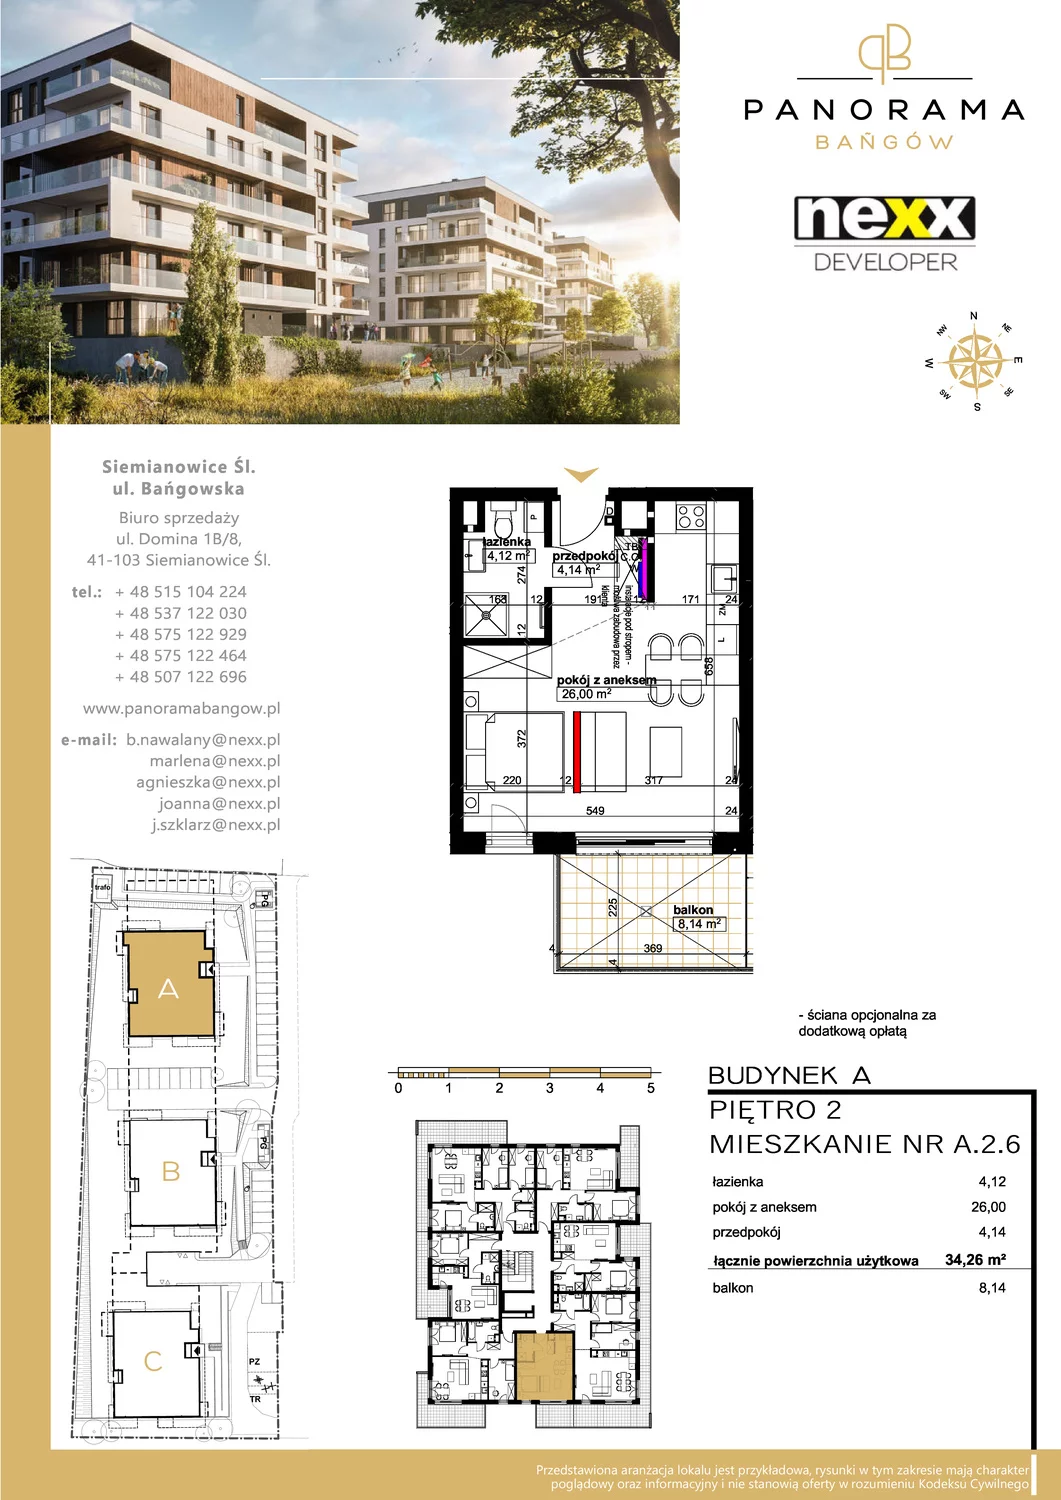 Mieszkanie 34,26 m², piętro 2, oferta nr A 2.6, Panorama Bańgów, Siemianowice Śląskie, Bańgów, ul. Bańgowska